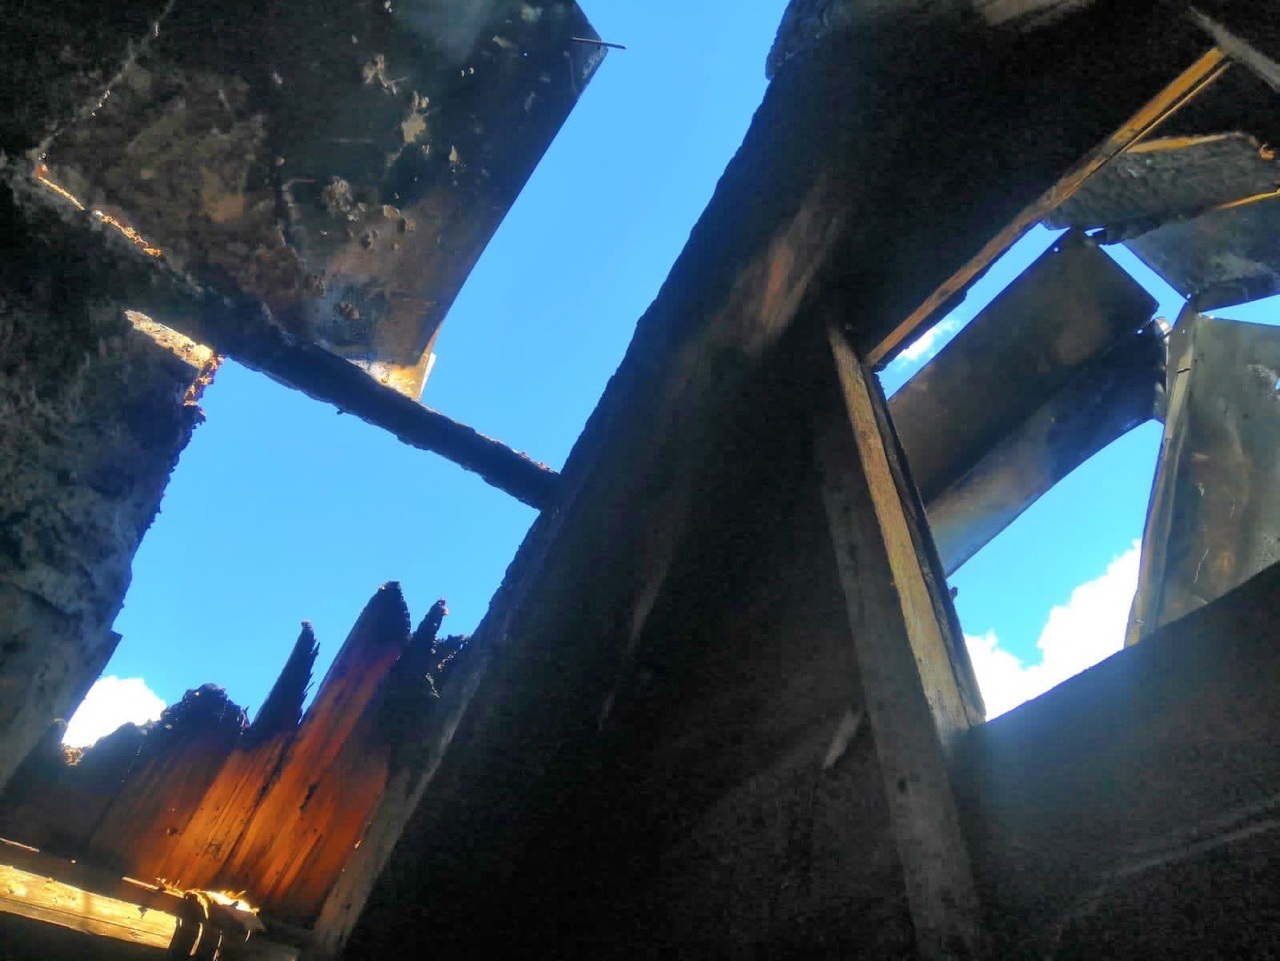 В Холм-Жирковском районе добровольная пожарная дружина оперативно ликвидировала возгорание в жилом доме